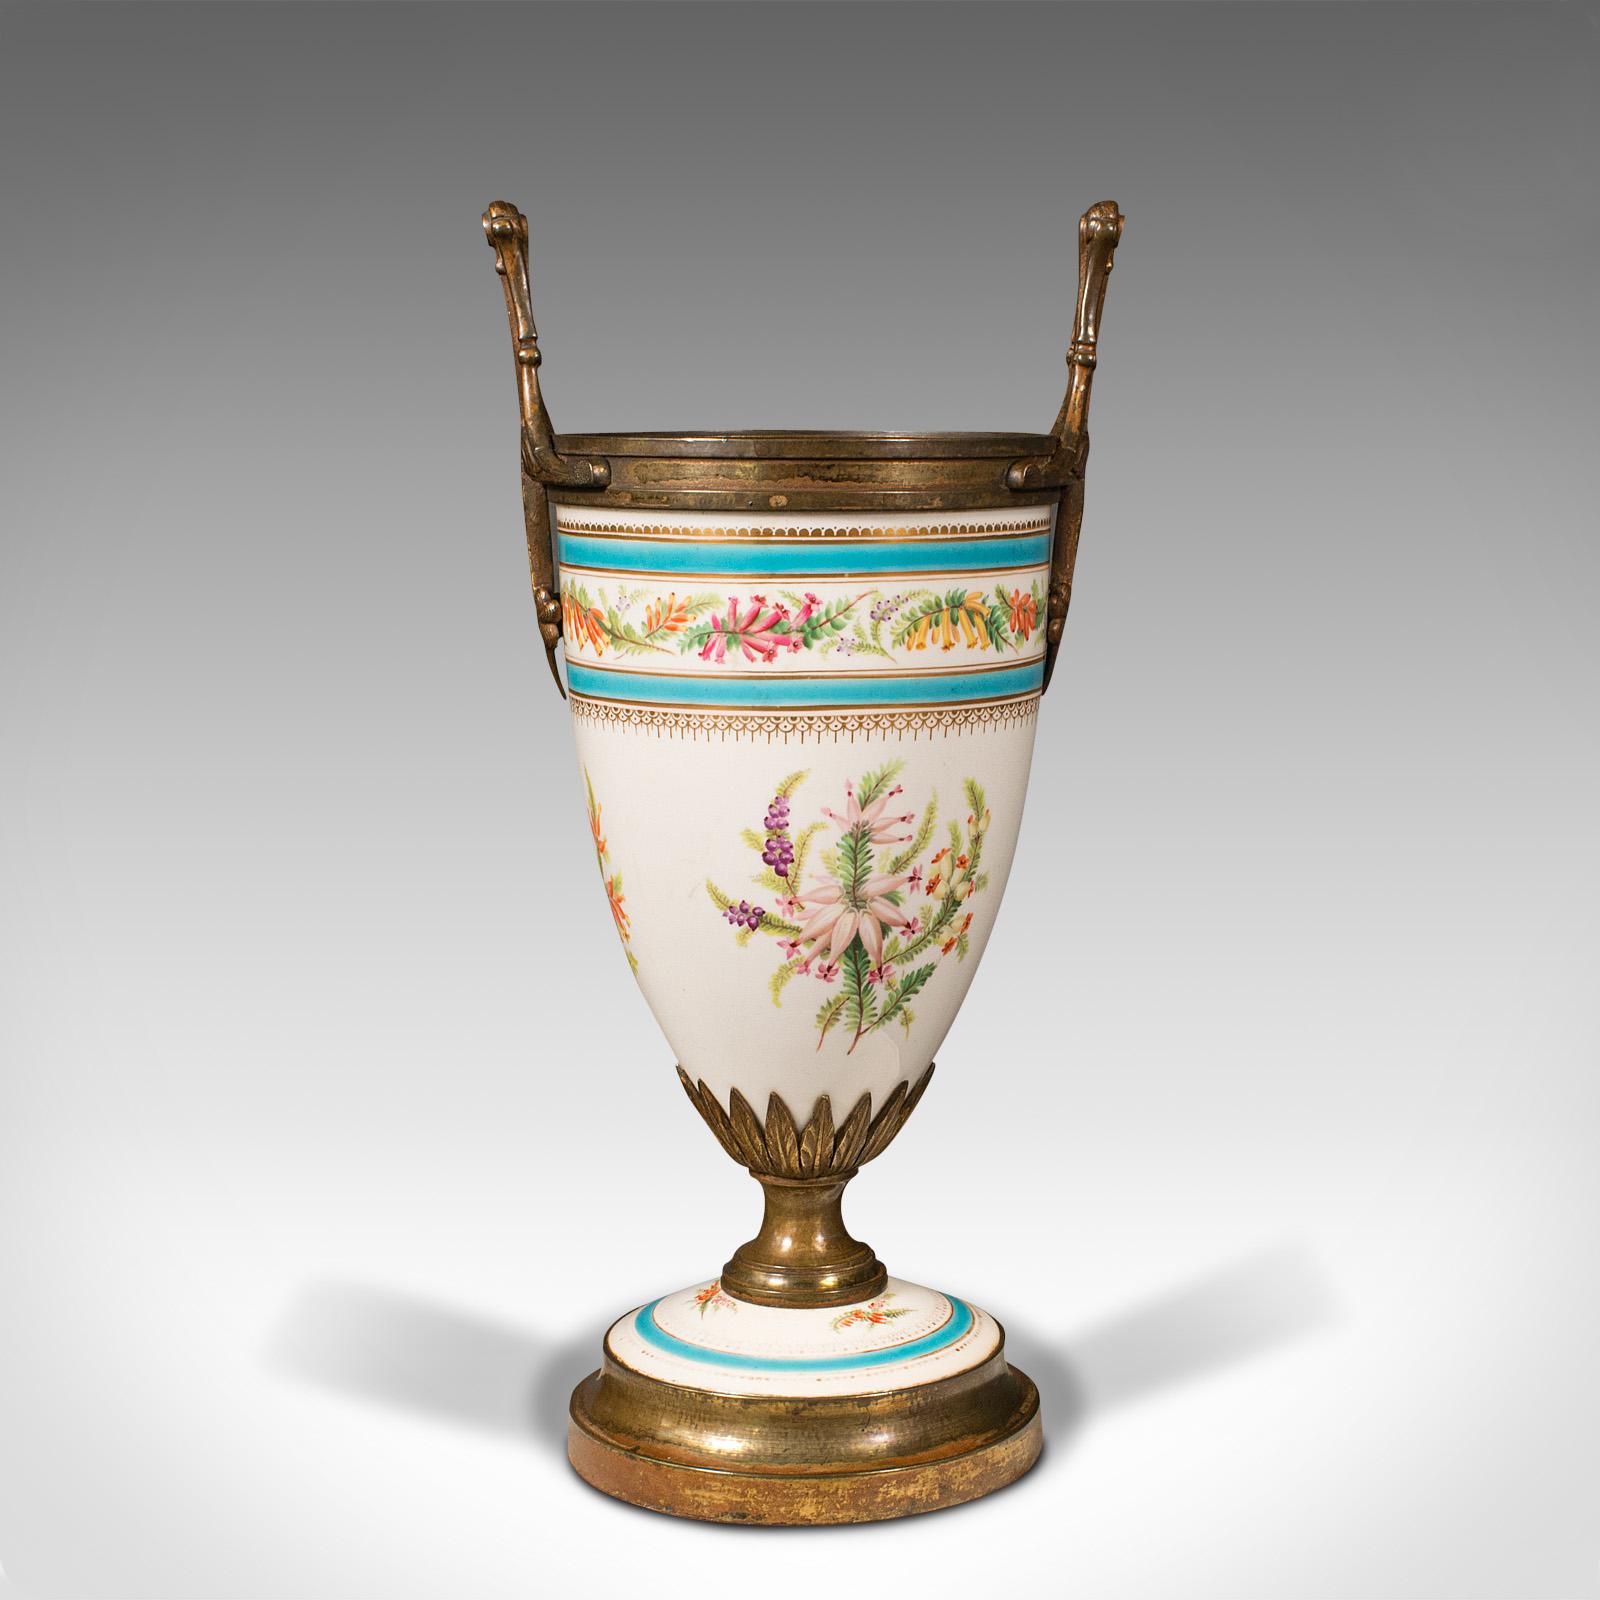 Dies ist ein antiker Kaminsims-Jardiniere. Ein französisches Pflanzgefäß aus Keramik und vergoldetem Metall aus der späten viktorianischen Zeit um 1900.

Unverwechselbare Form, ansprechende Farbe und Verarbeitung
Zeigt eine wünschenswerte